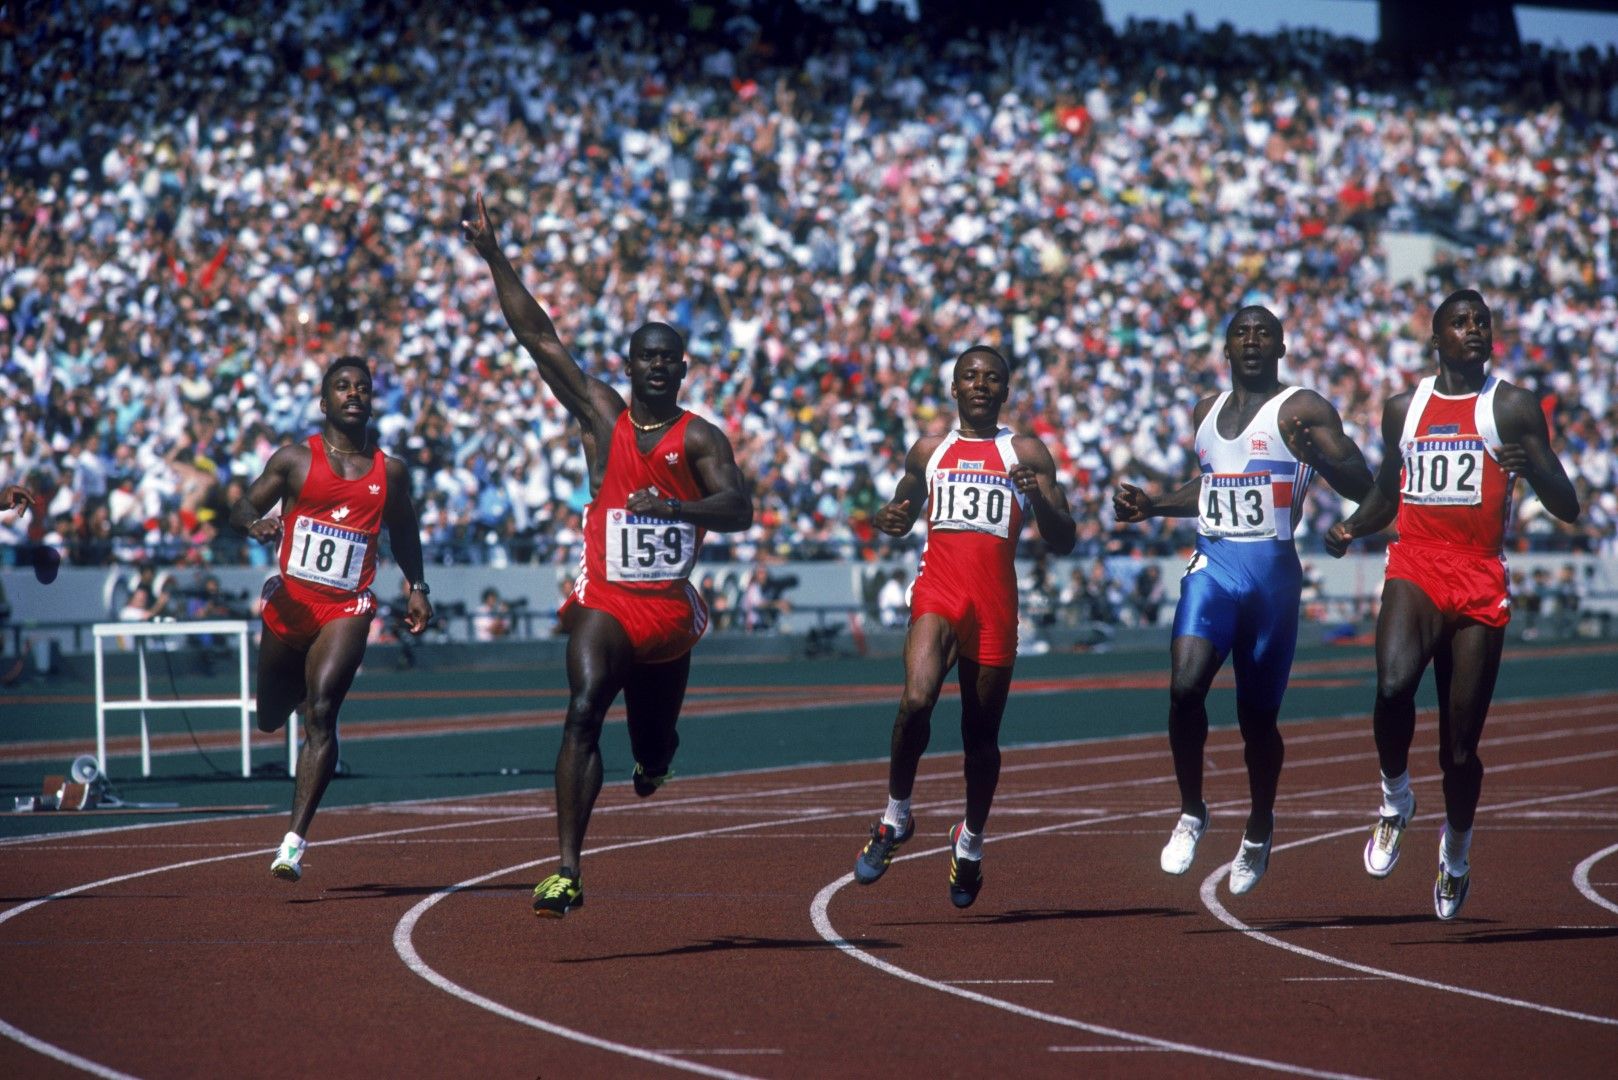 Скандалът на игрите бе бягането на 100 м, където Бен Джонсън разби конкуренцията с нов световен рекорд, но ден по-късно бе хванат с анаболни стероиди и дисквалифициран.